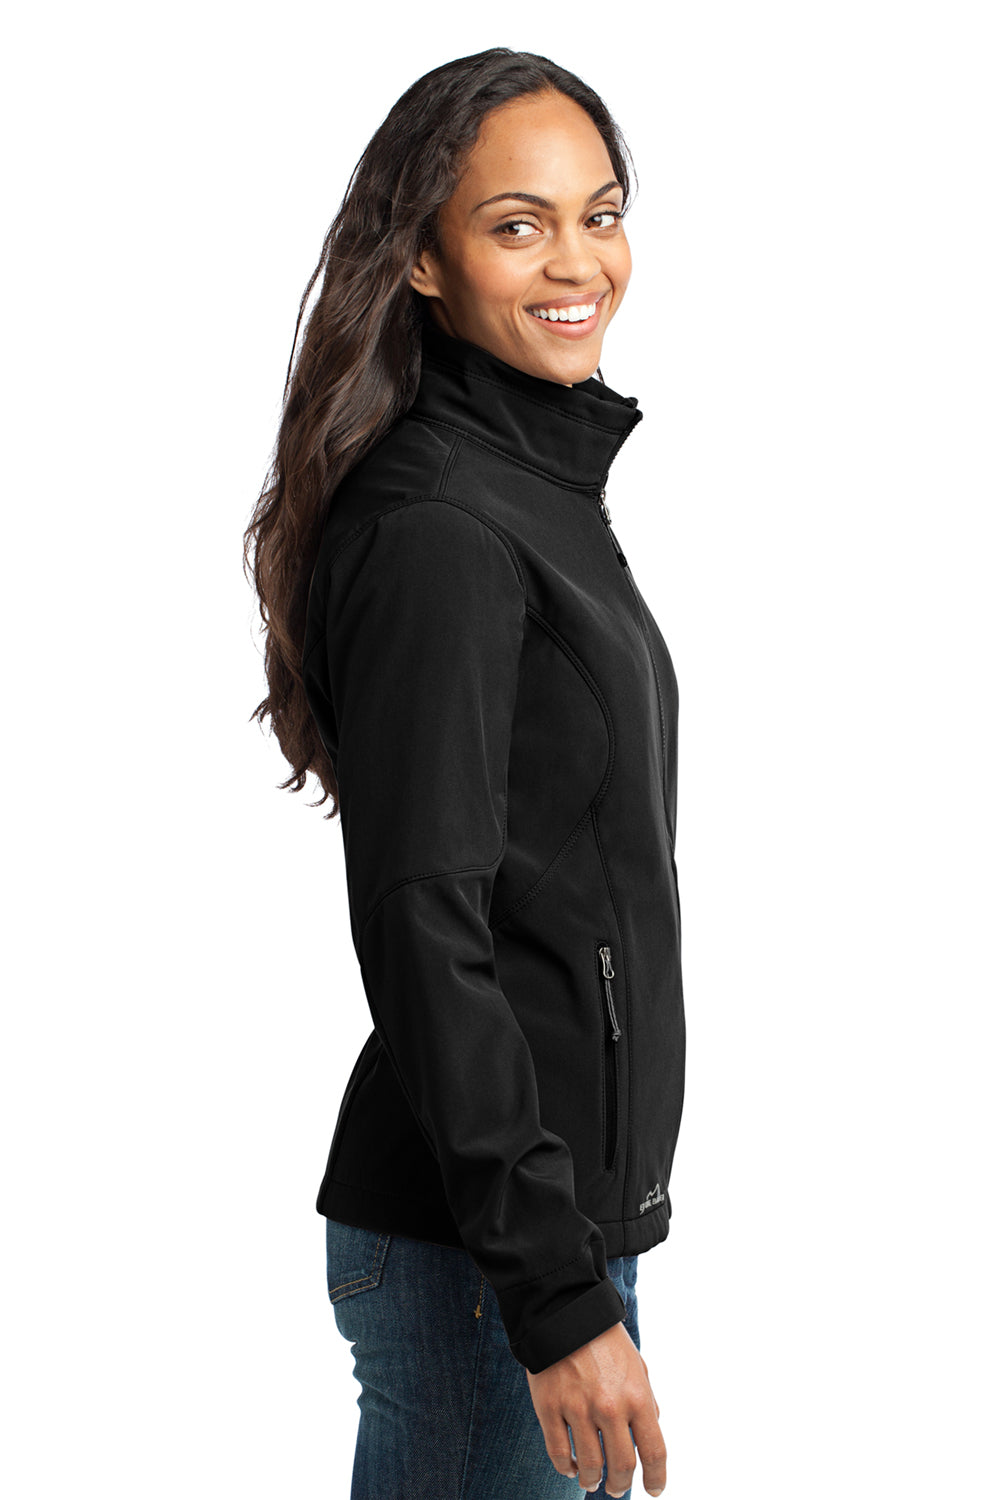 Eddie Bauer EB531 Womens Water Resistant Full Zip Jacket Black Model Side